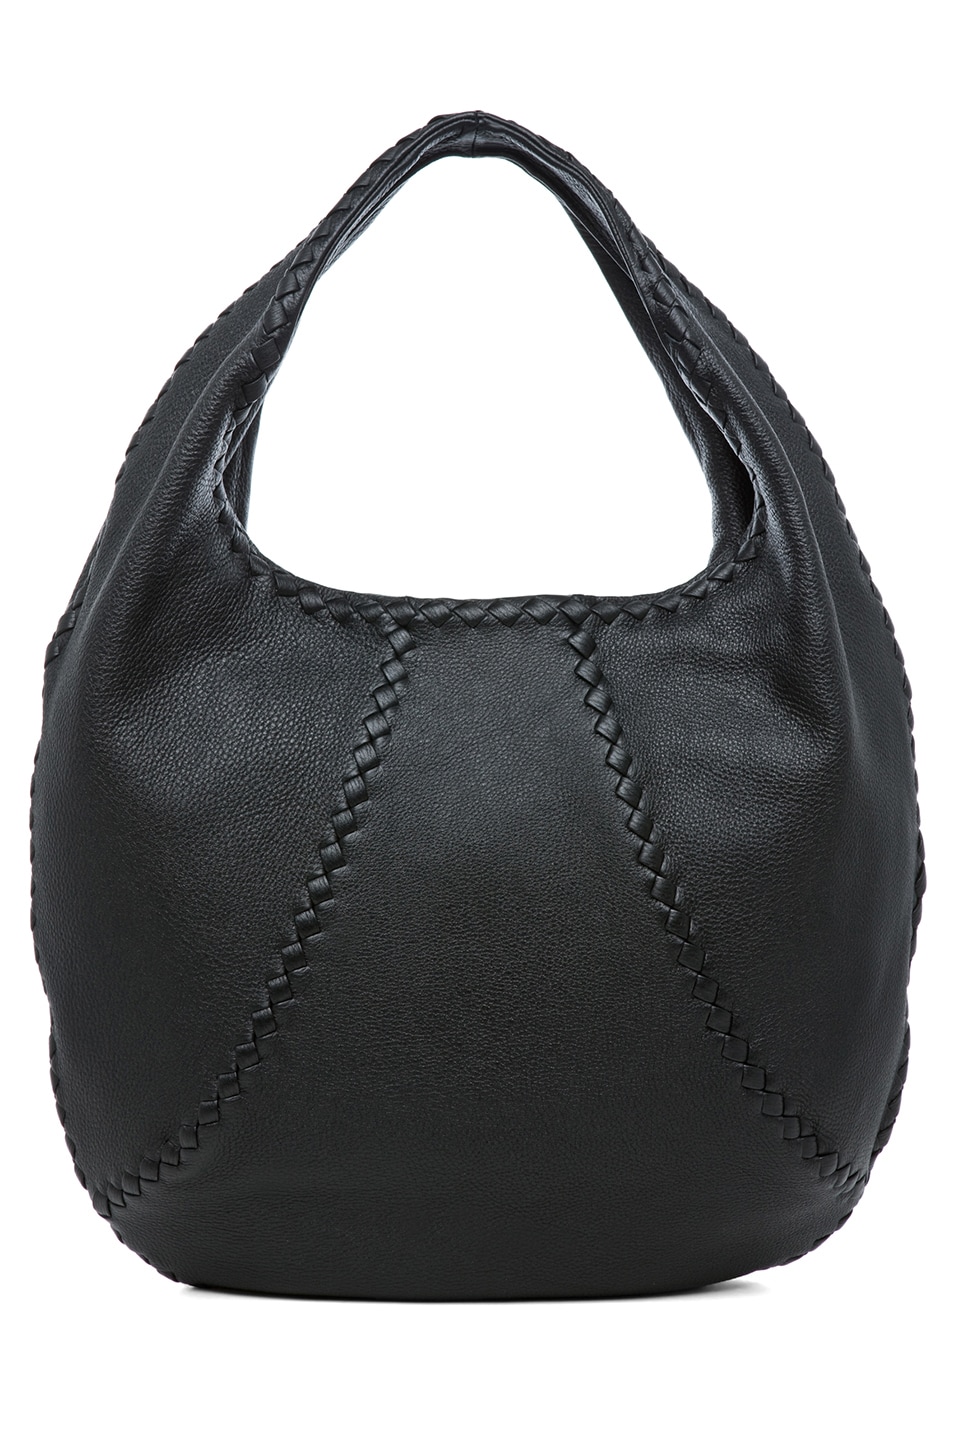 Bottega Veneta Hobo Bag in Black | FWRD